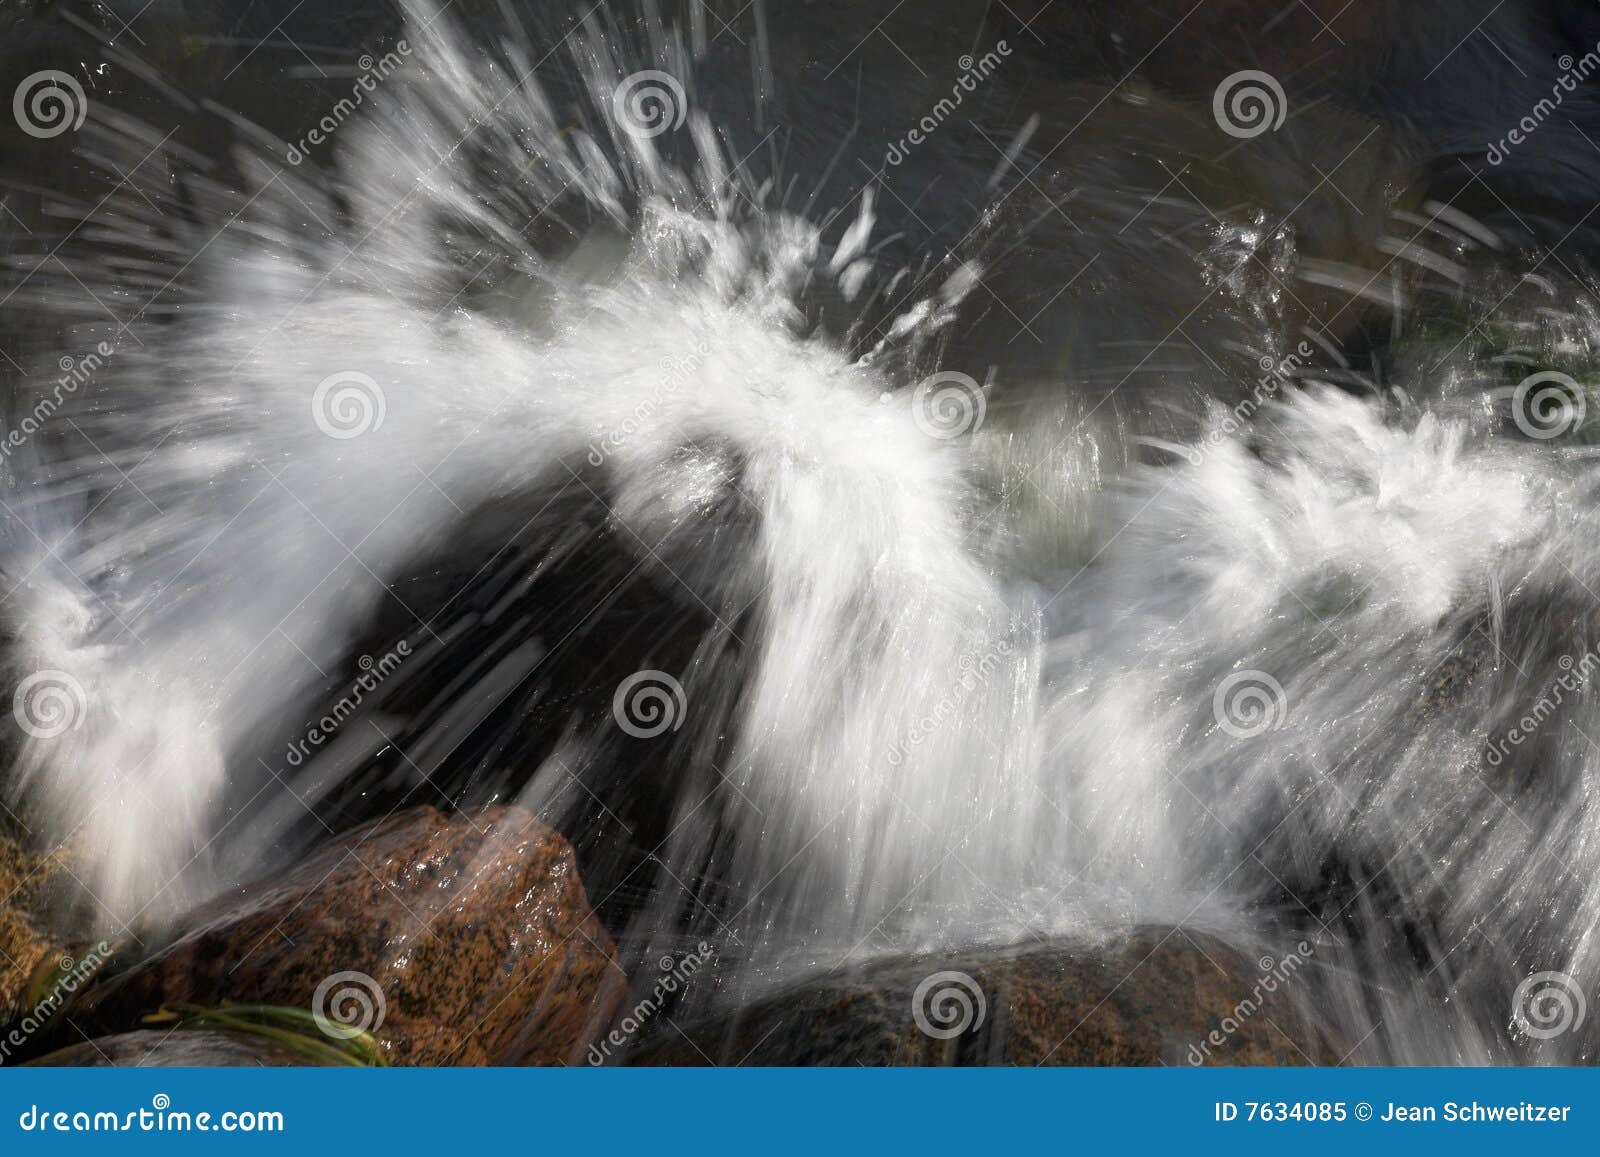 Water Splashing On Rocks Stock Image Image Of Stone Water 7634085